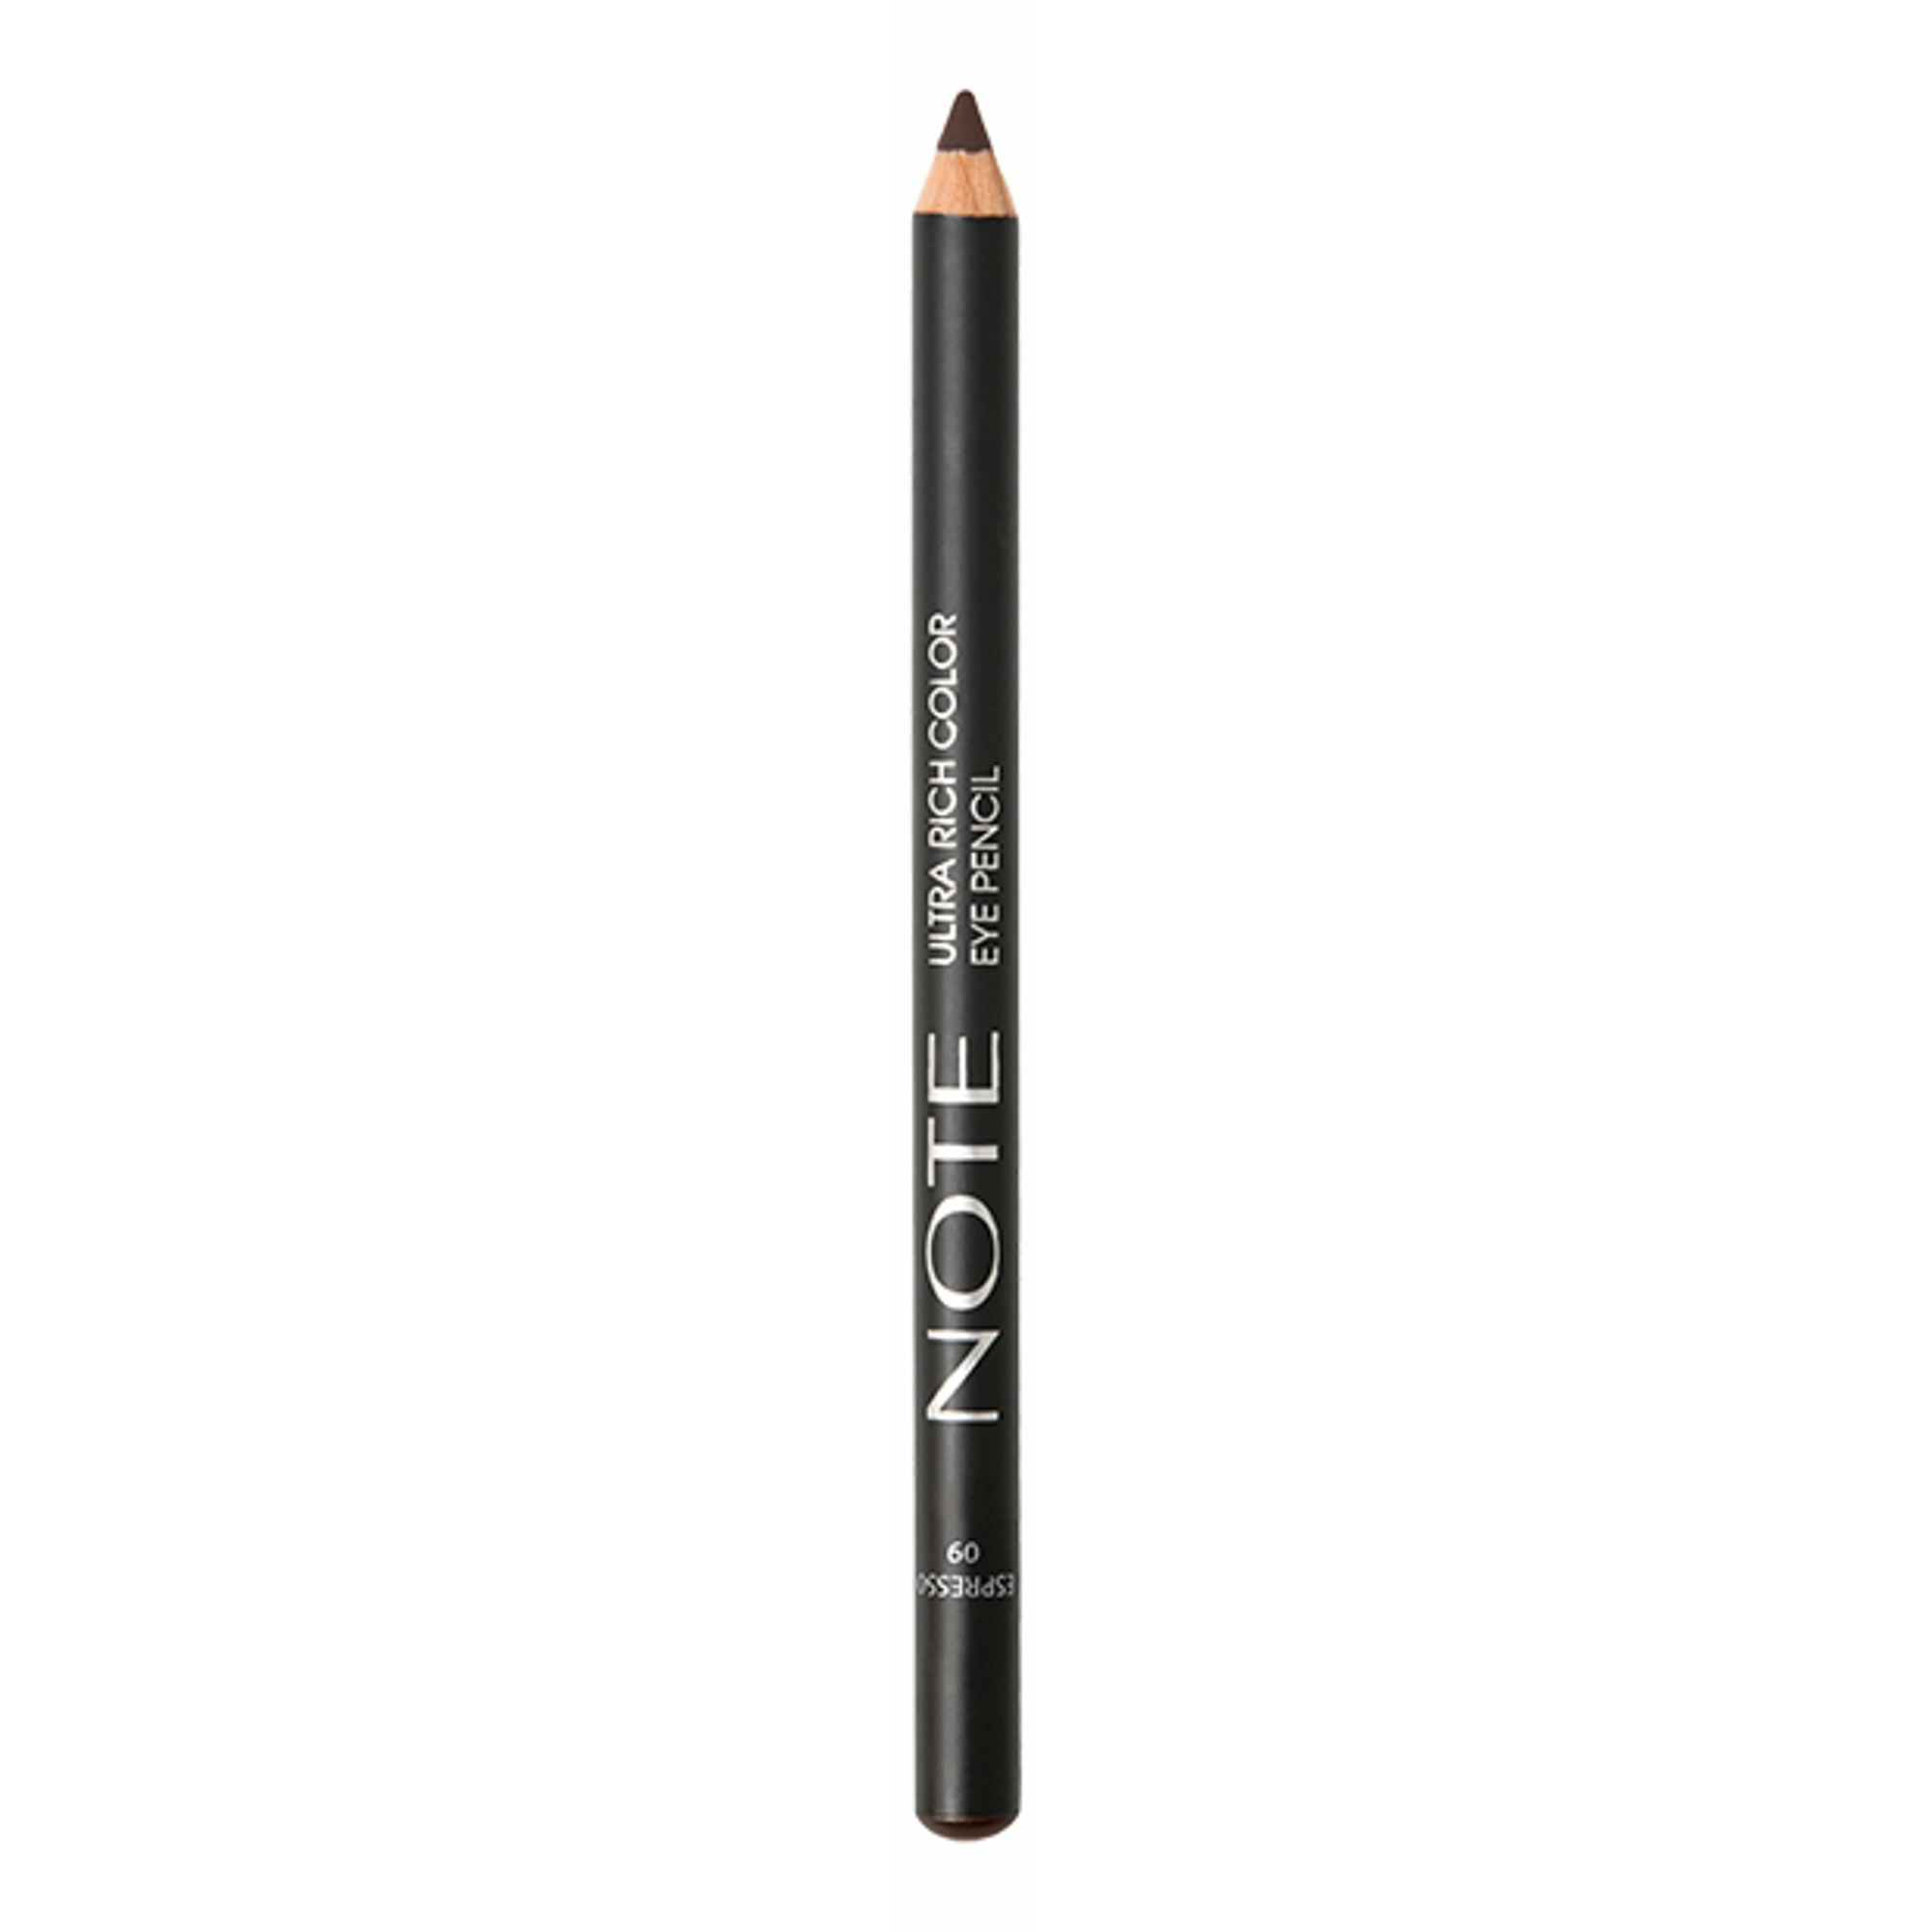 Карандаш насыщенного цвета для глаз 09 / ULTRA RICH COLOR EYE PENCIL 1,1 г карандаш для губ note ultra rich color lip pencil 1 1 г